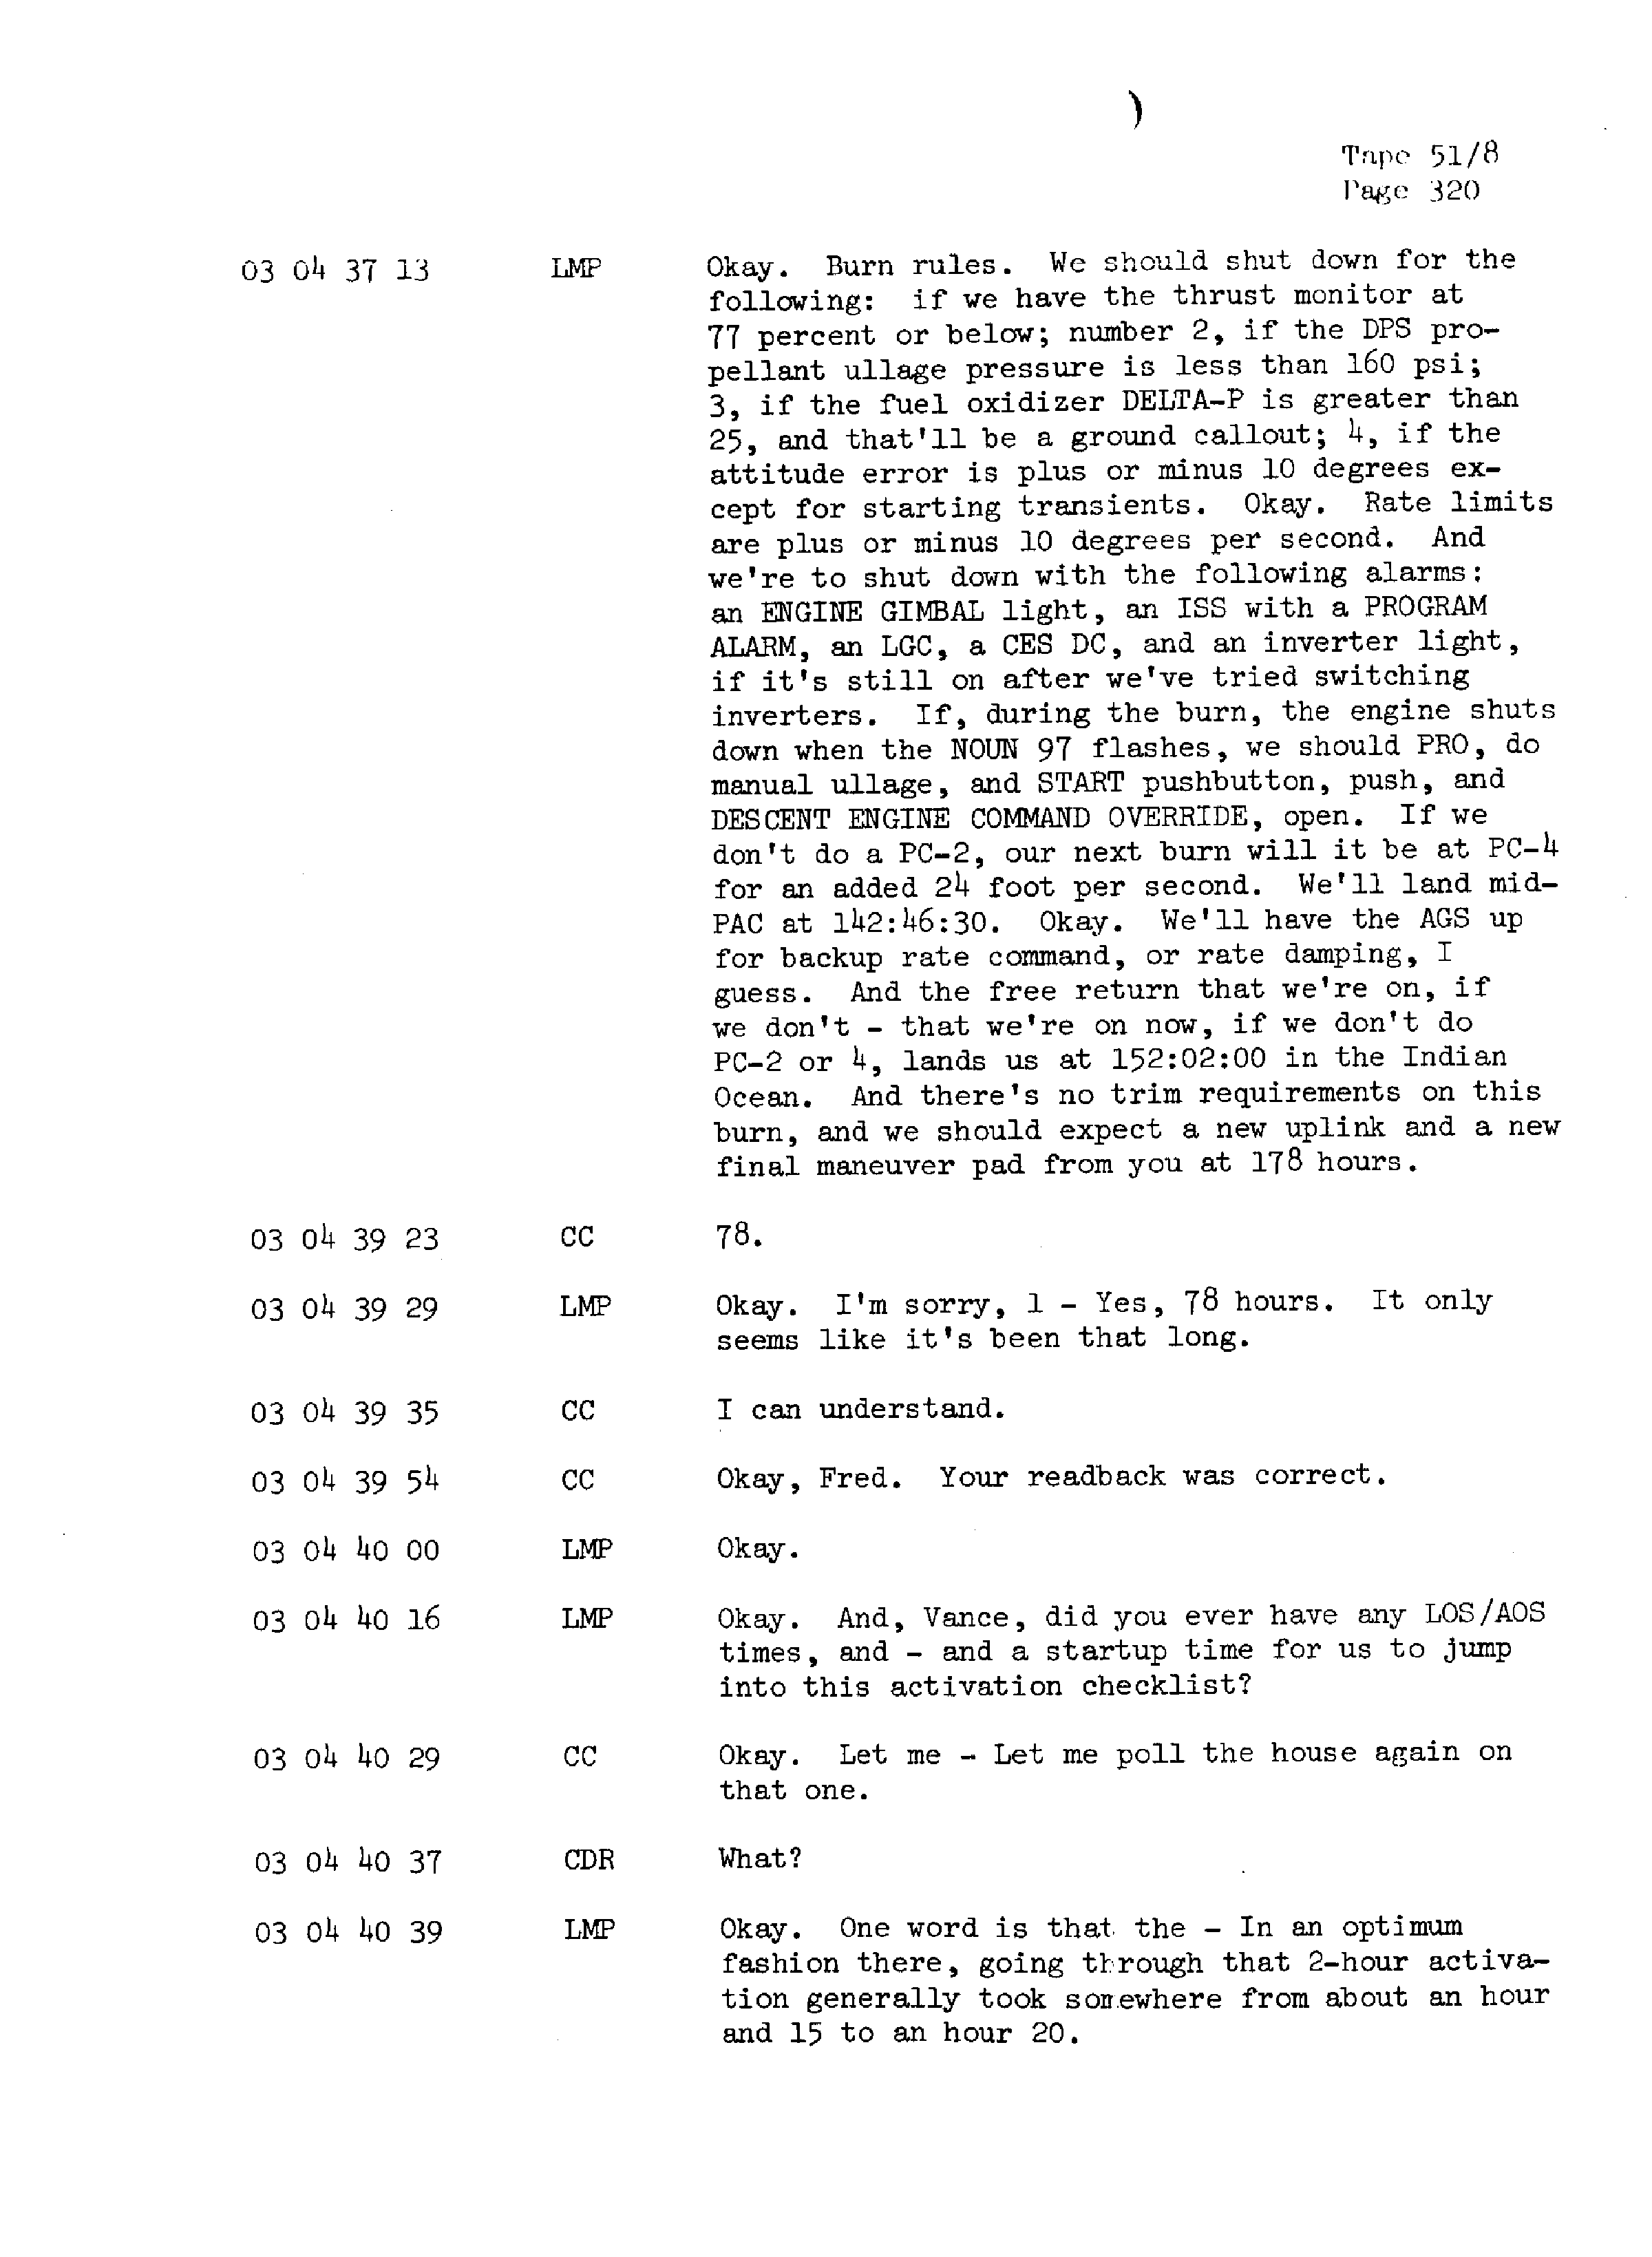 Page 327 of Apollo 13’s original transcript